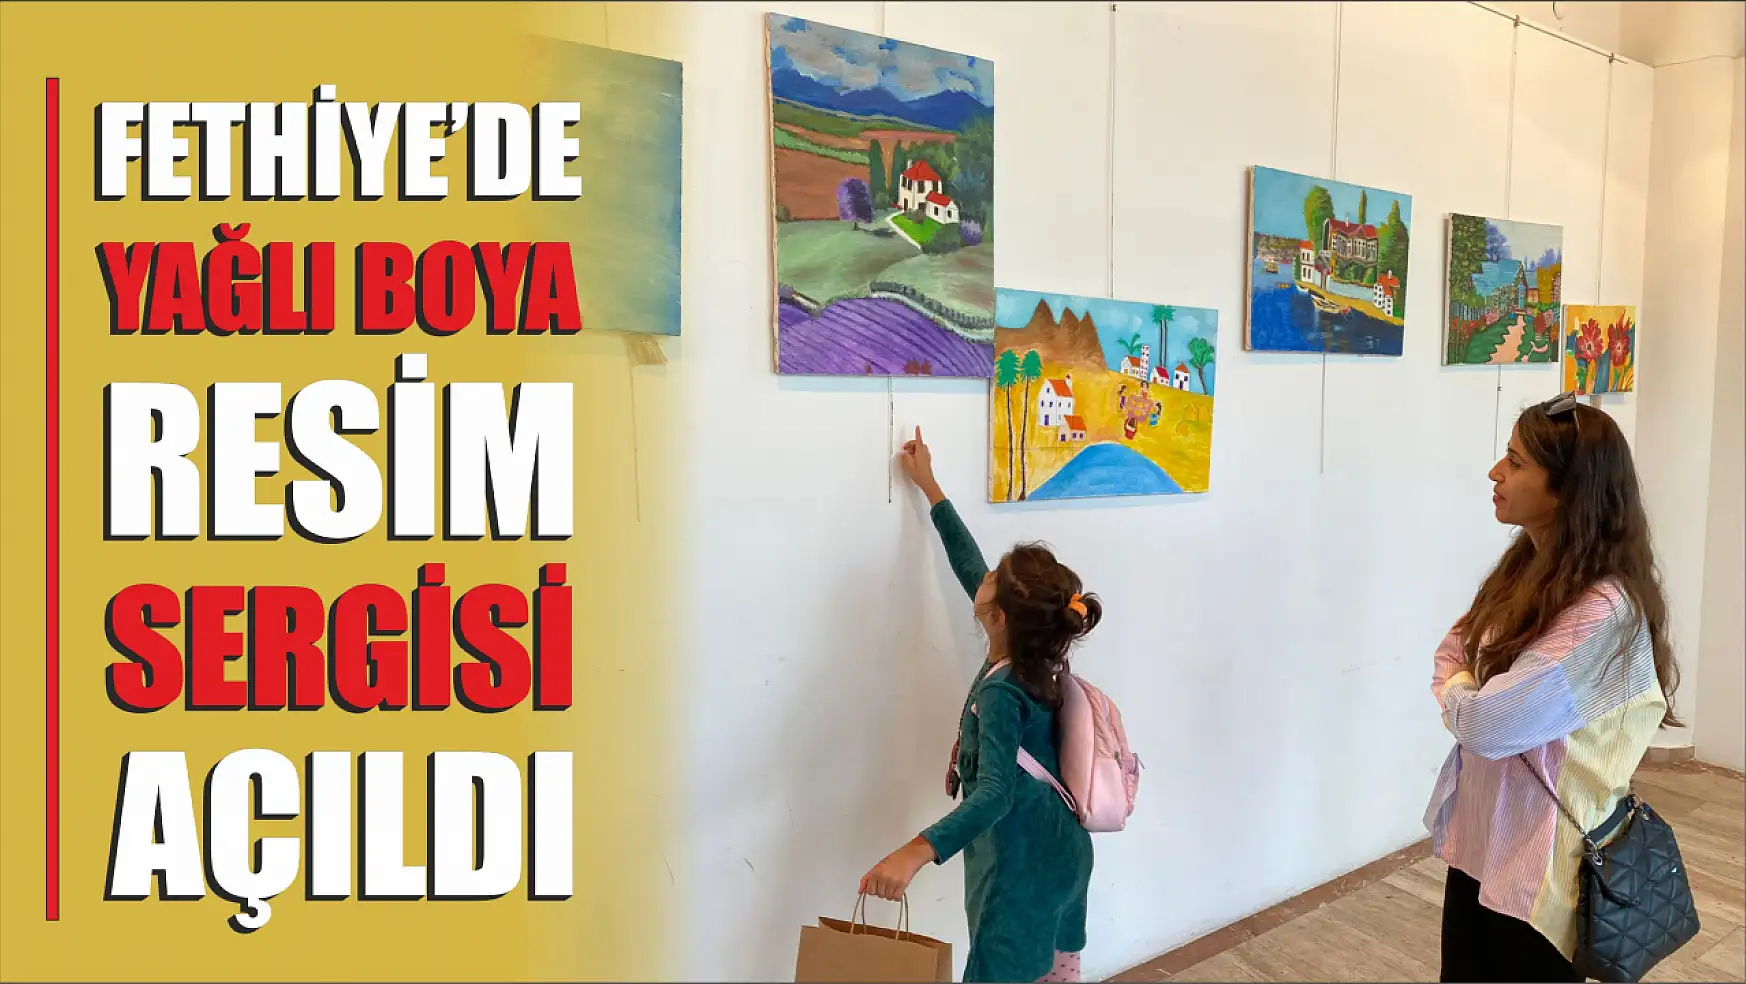 Fethiye'de Yağlı Boya Resim Sergisi Açıldı